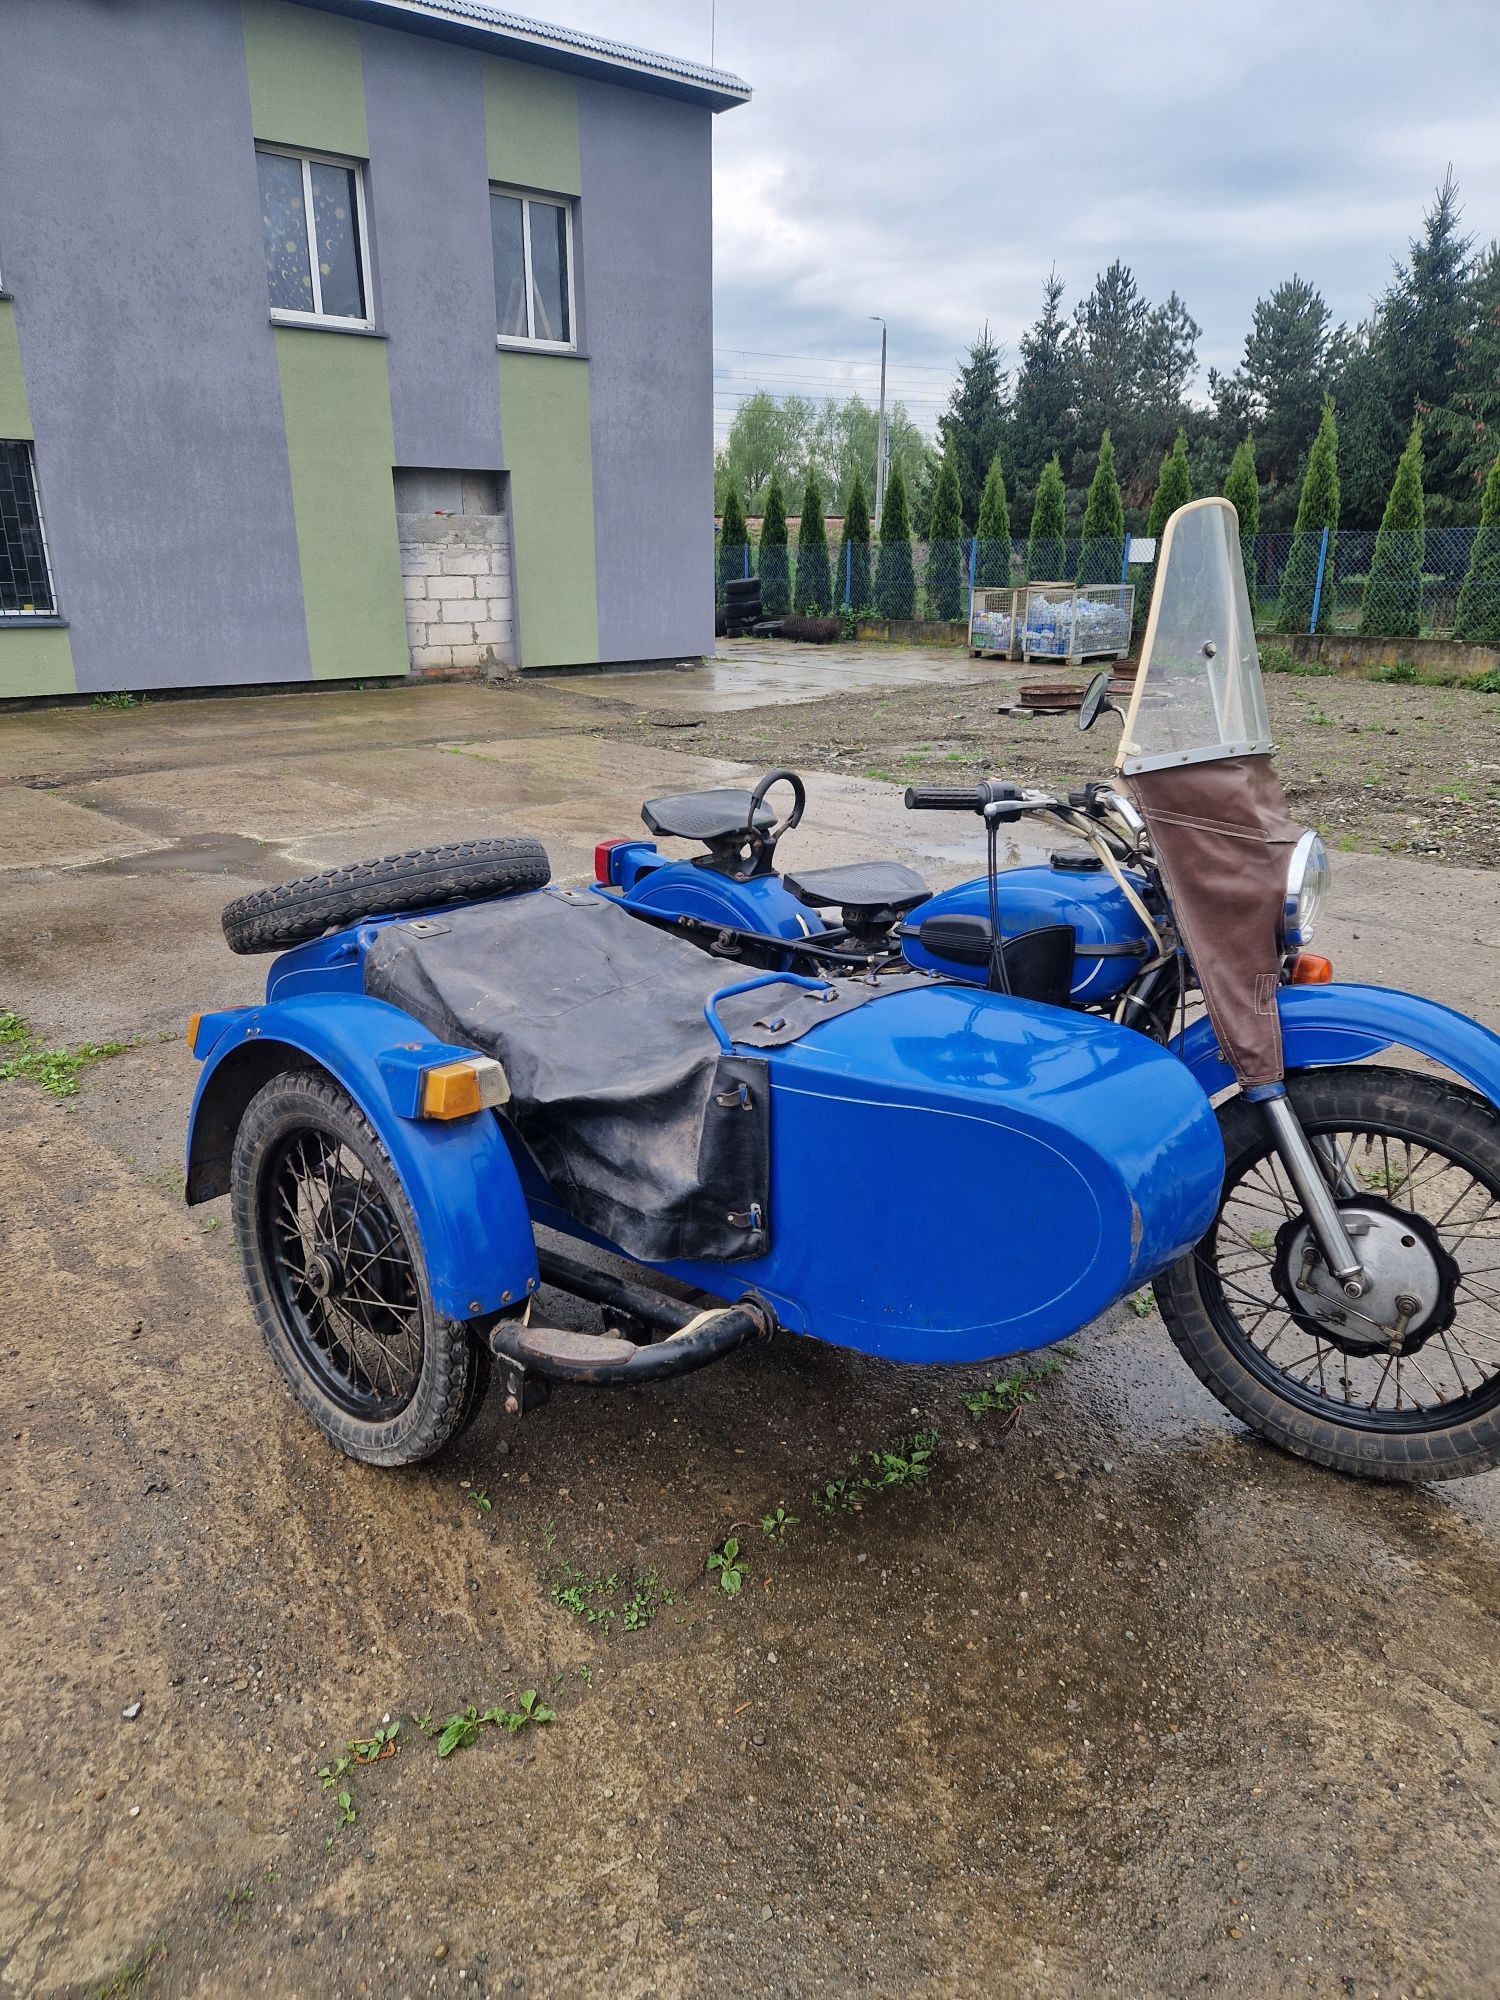 Motocykl Ural IM-38 z wstecznym biegem .